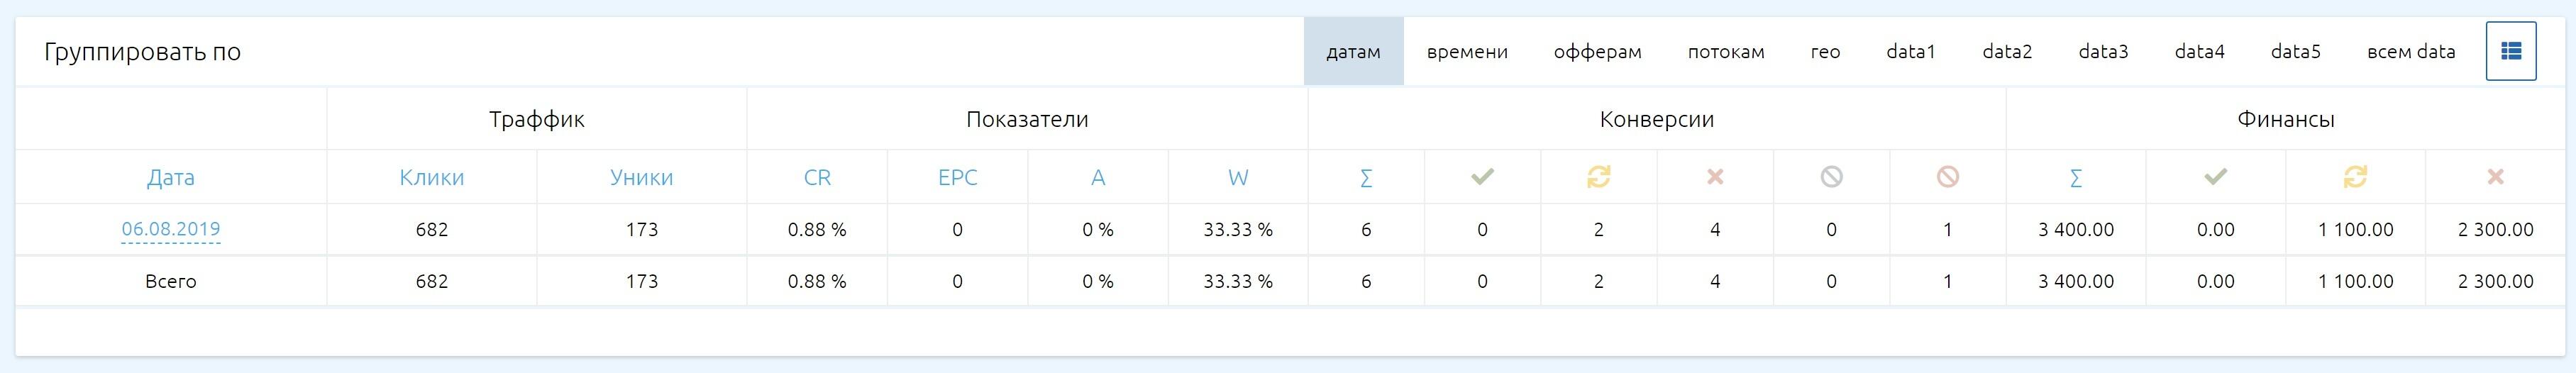 статистика с kma.biz